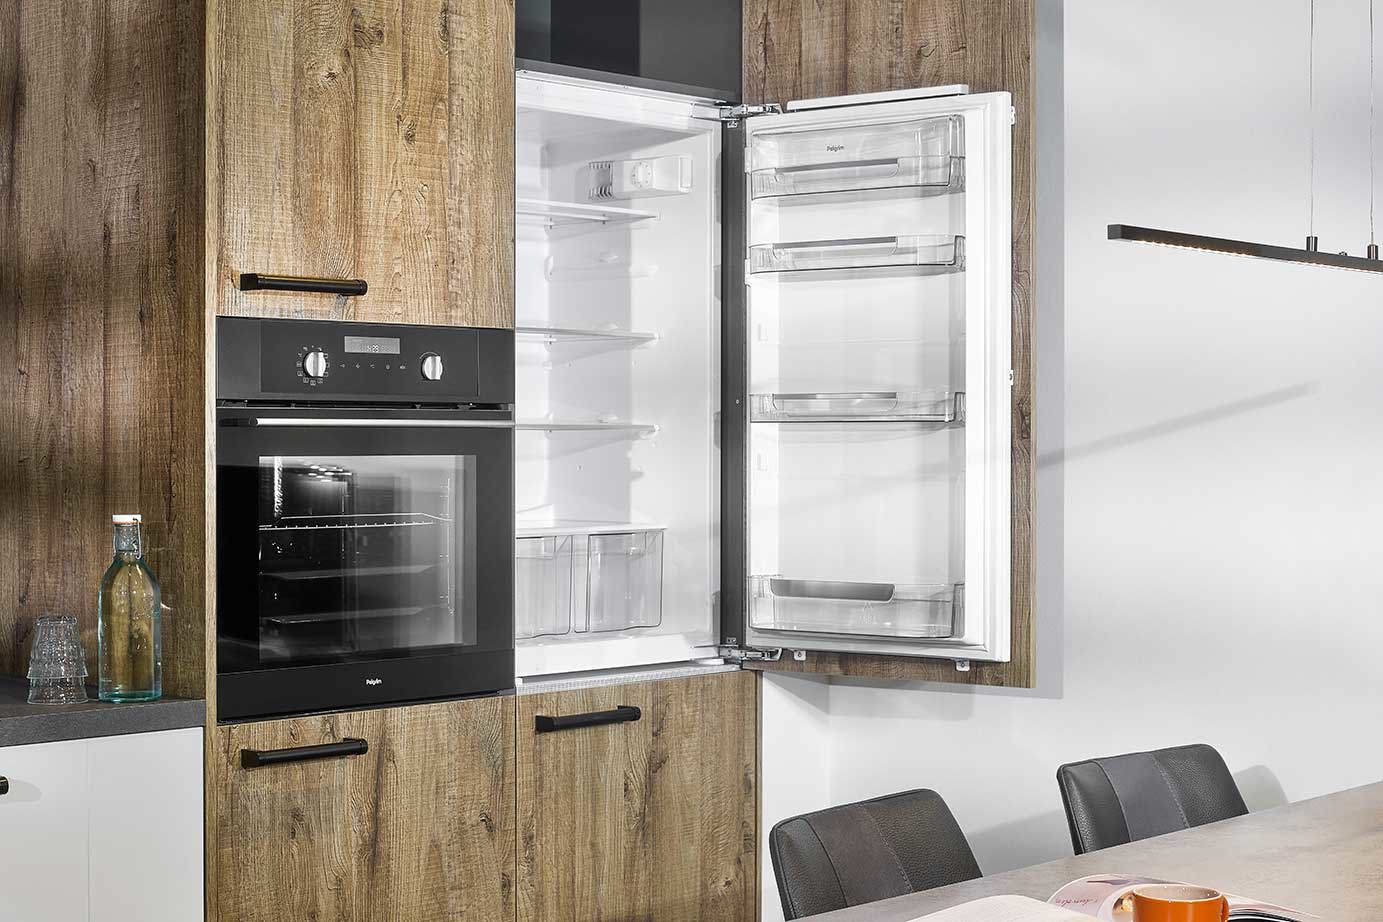 Landelijk moderne keuken, houten front en koelkast